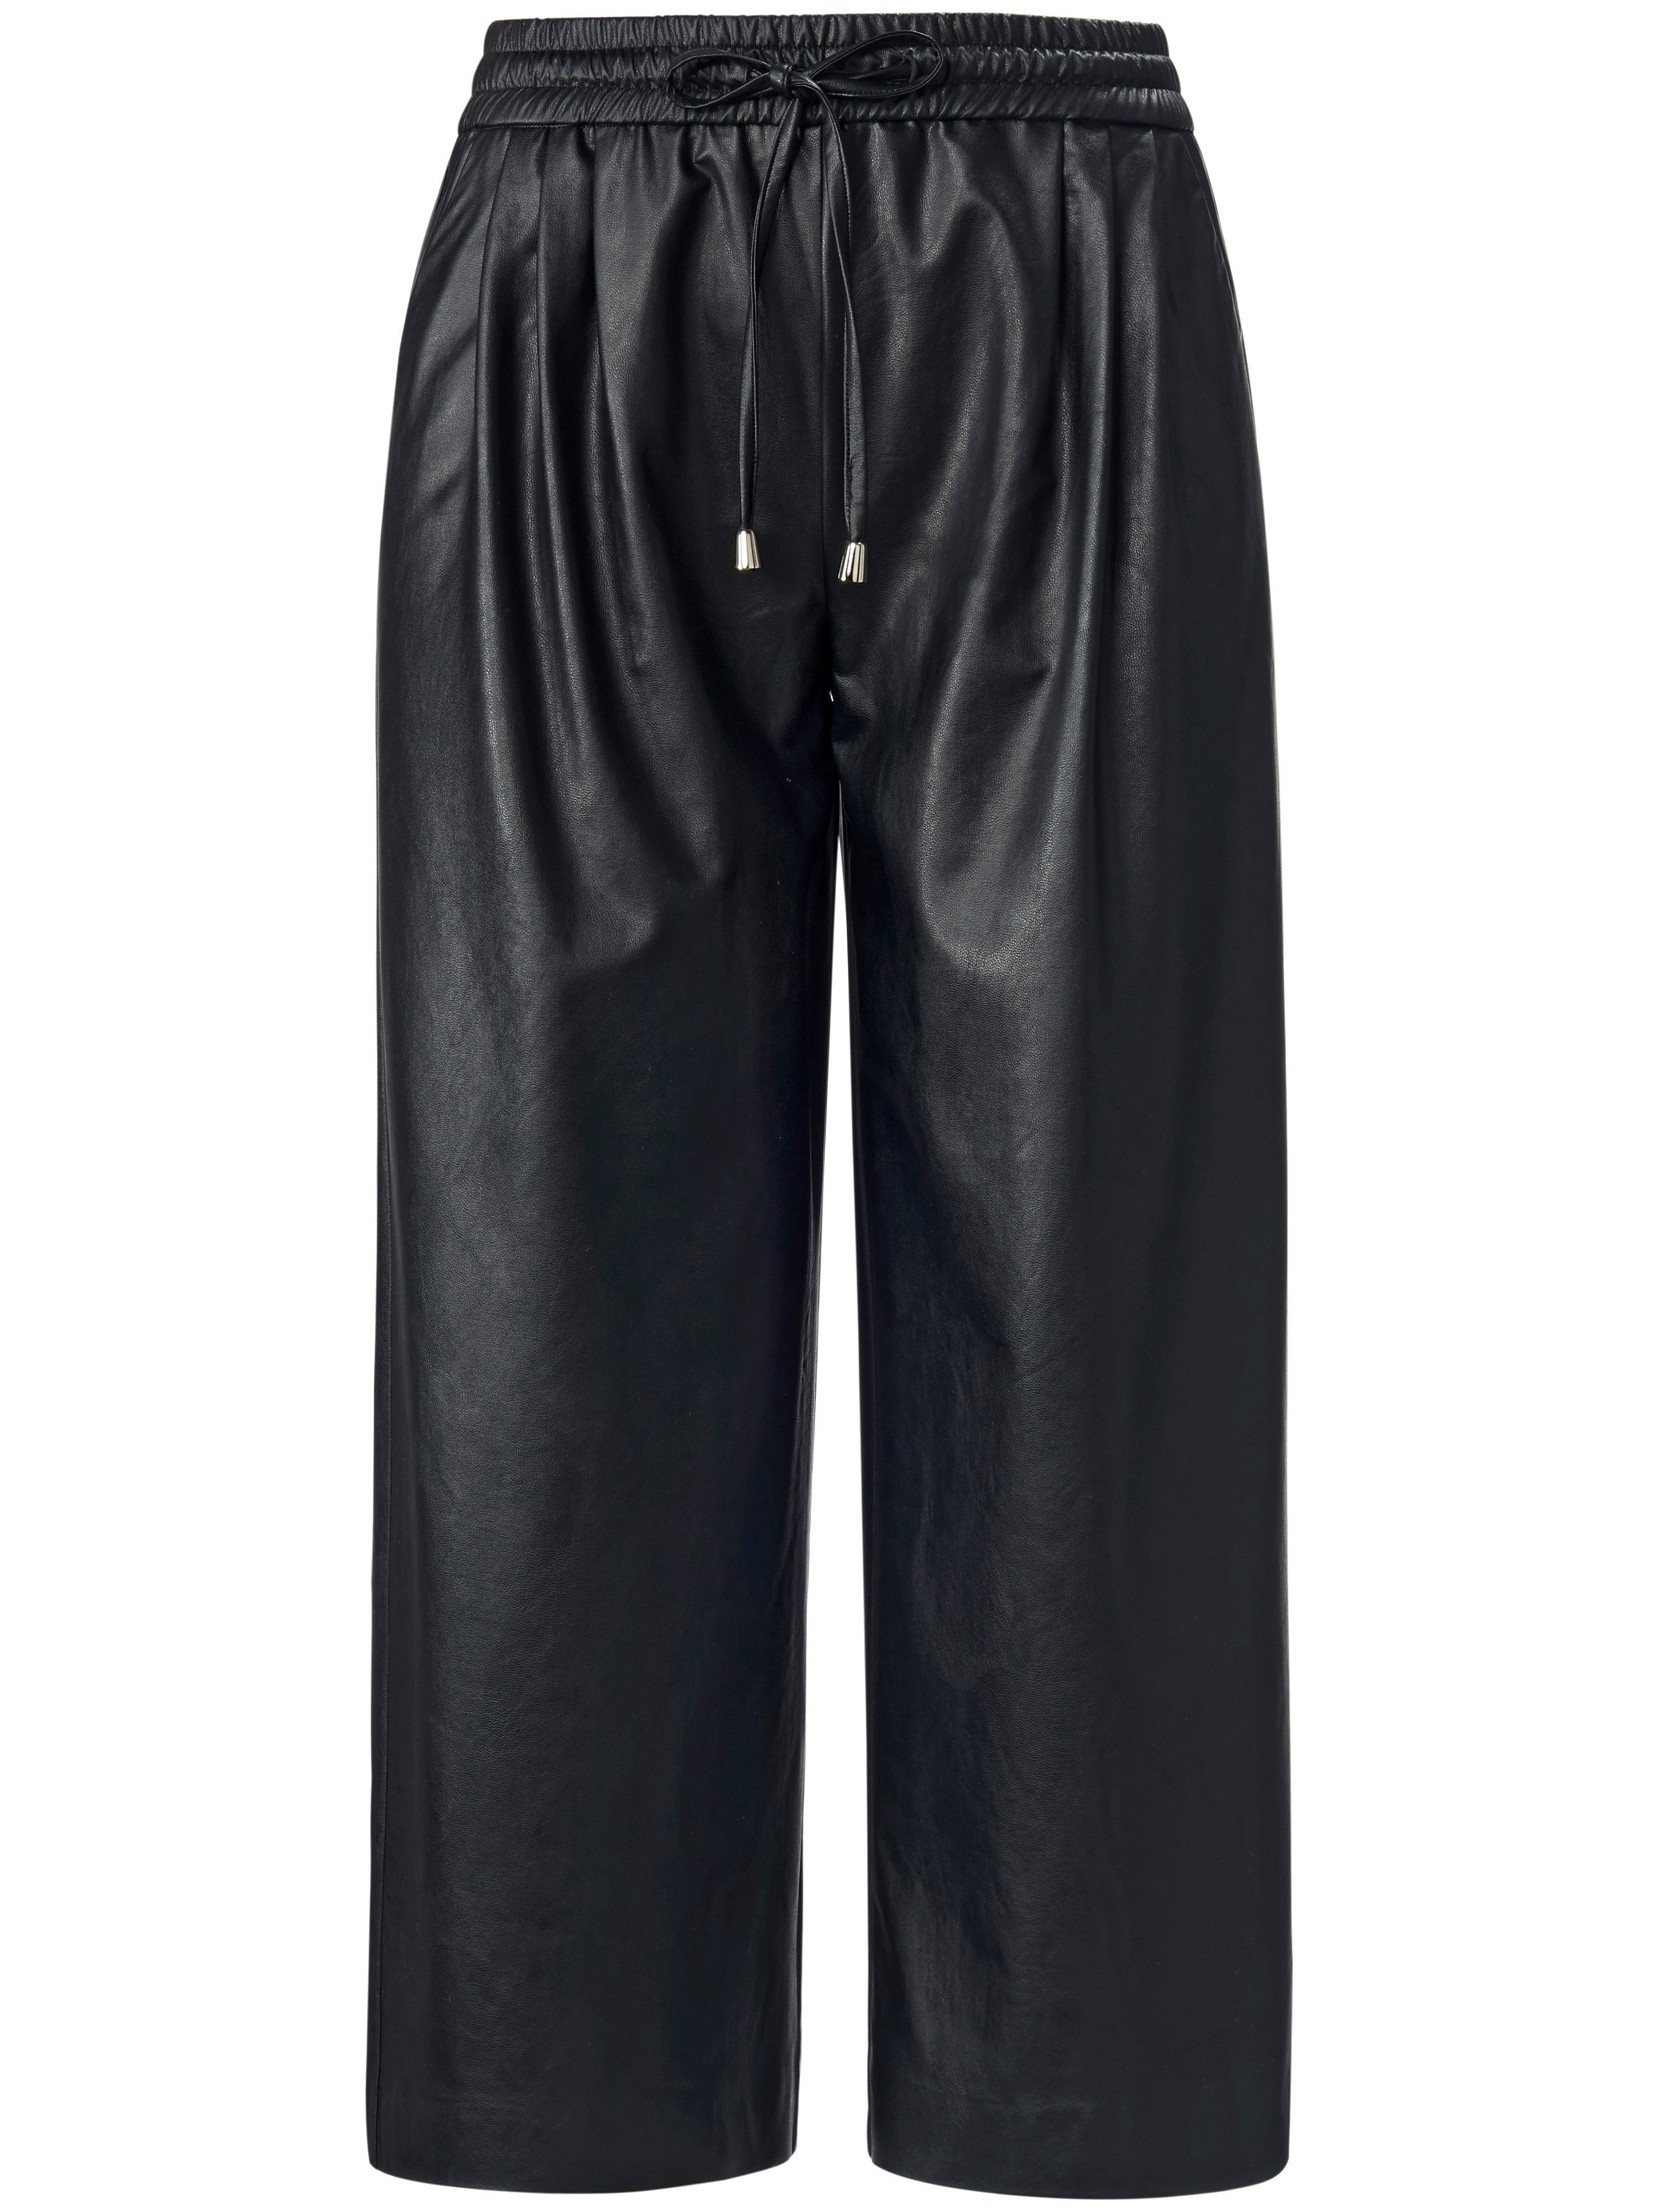 Le pantalon 3/4 avec ceinture élastiquée  MYBC noir